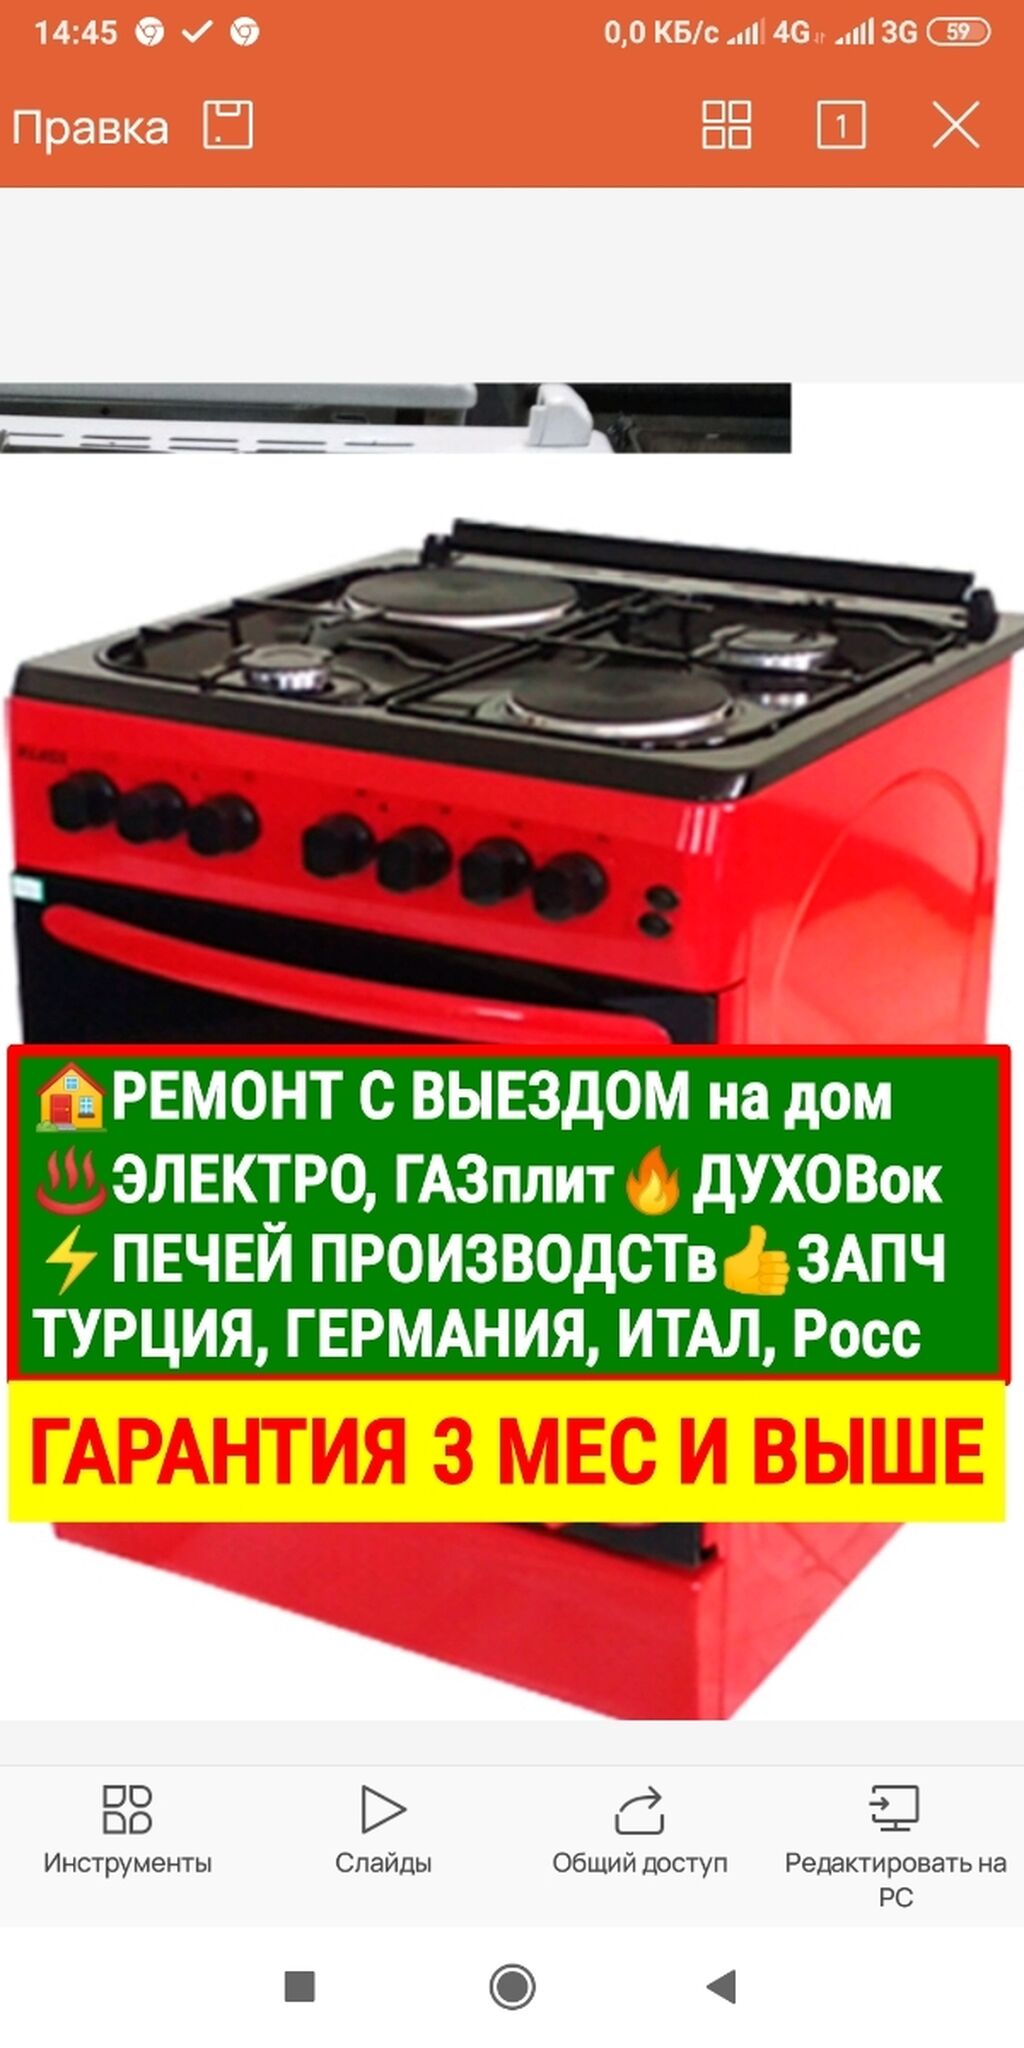 Ремонт электроподжига 💥 газовой плиты в Севастополе, цена услуг в службе Тандем